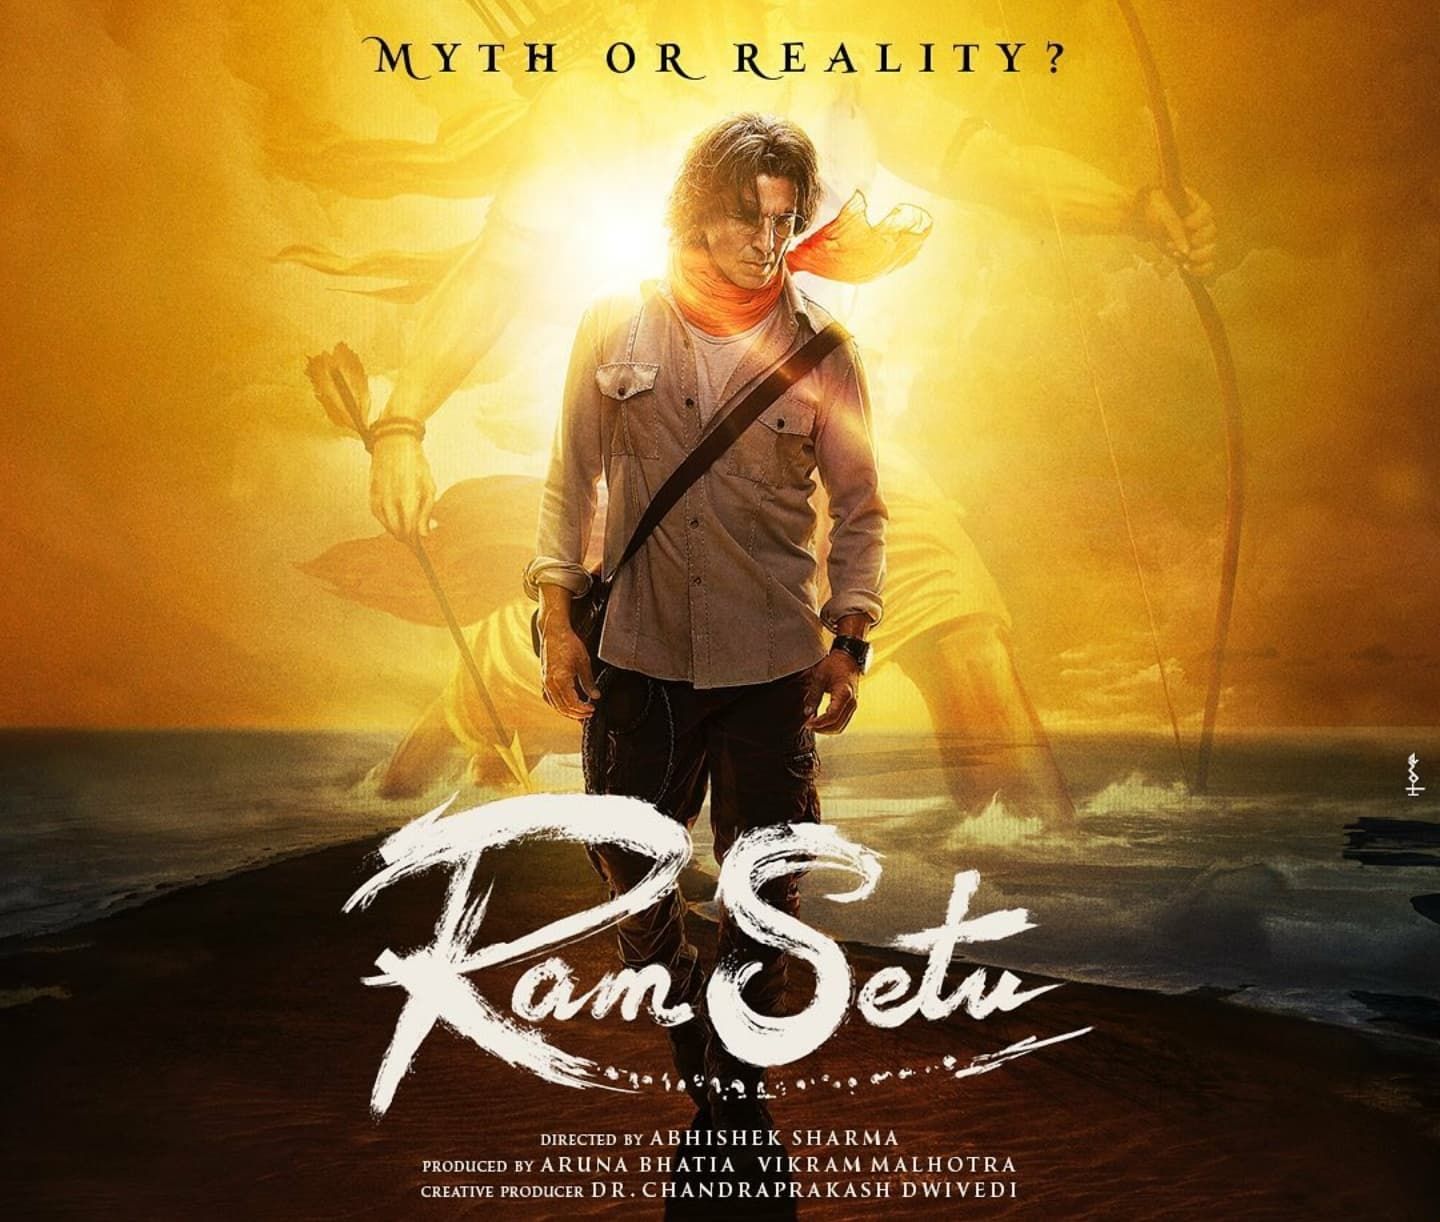 राम सेतु: अक्षय कुमार अयोध्या में करेंगे शूट, सीएम योगी से डिस्कस की फिल्म की स्क्रिप्ट! 